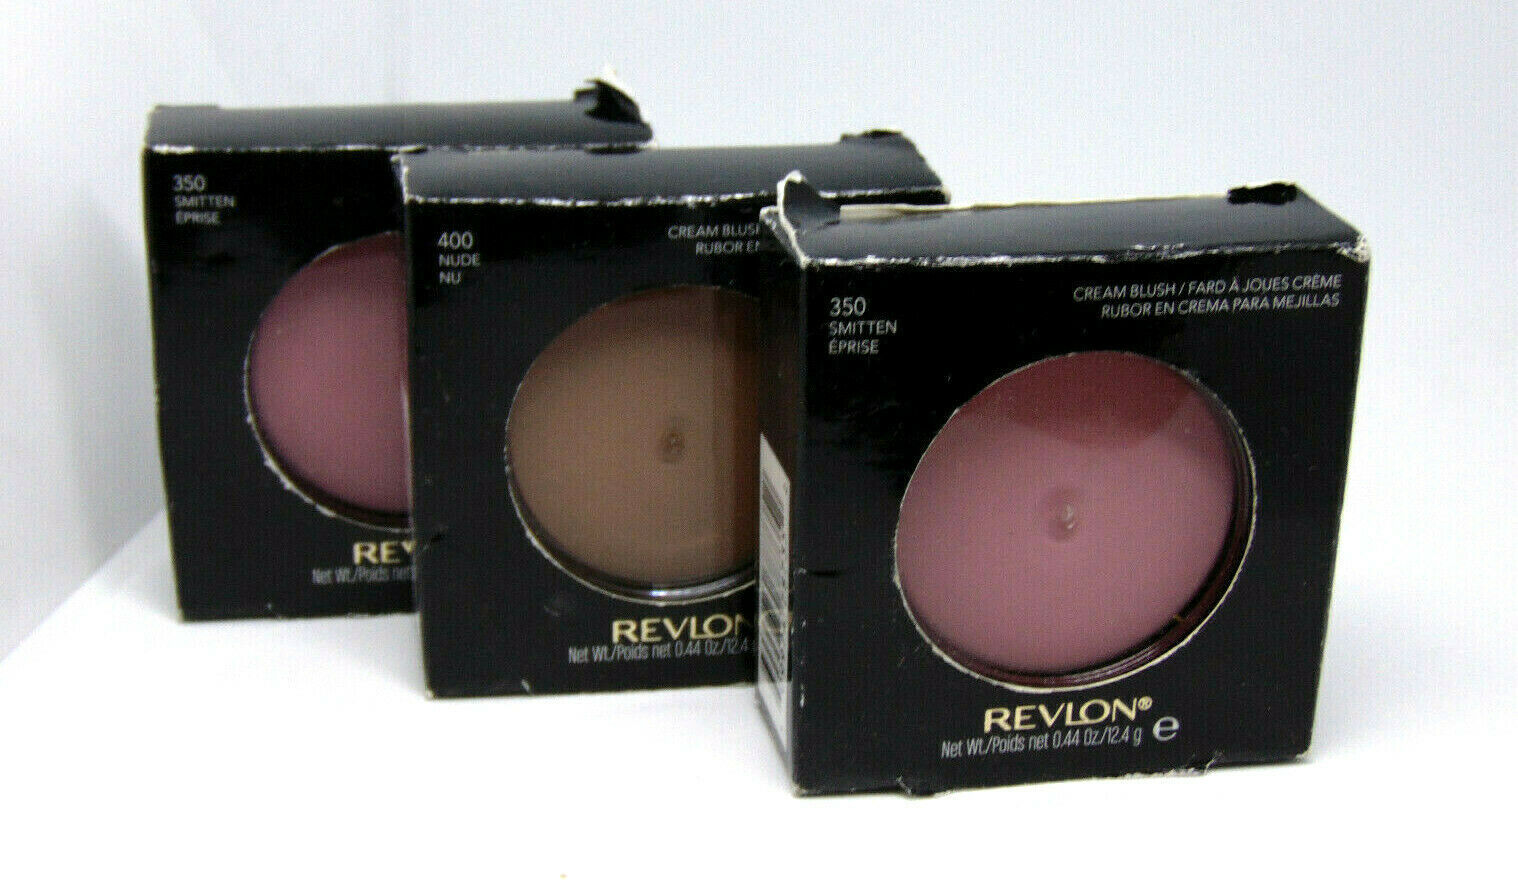 REVLON Cream Blush  0.44 oz/ 12.4g Choose Shade - $6.50